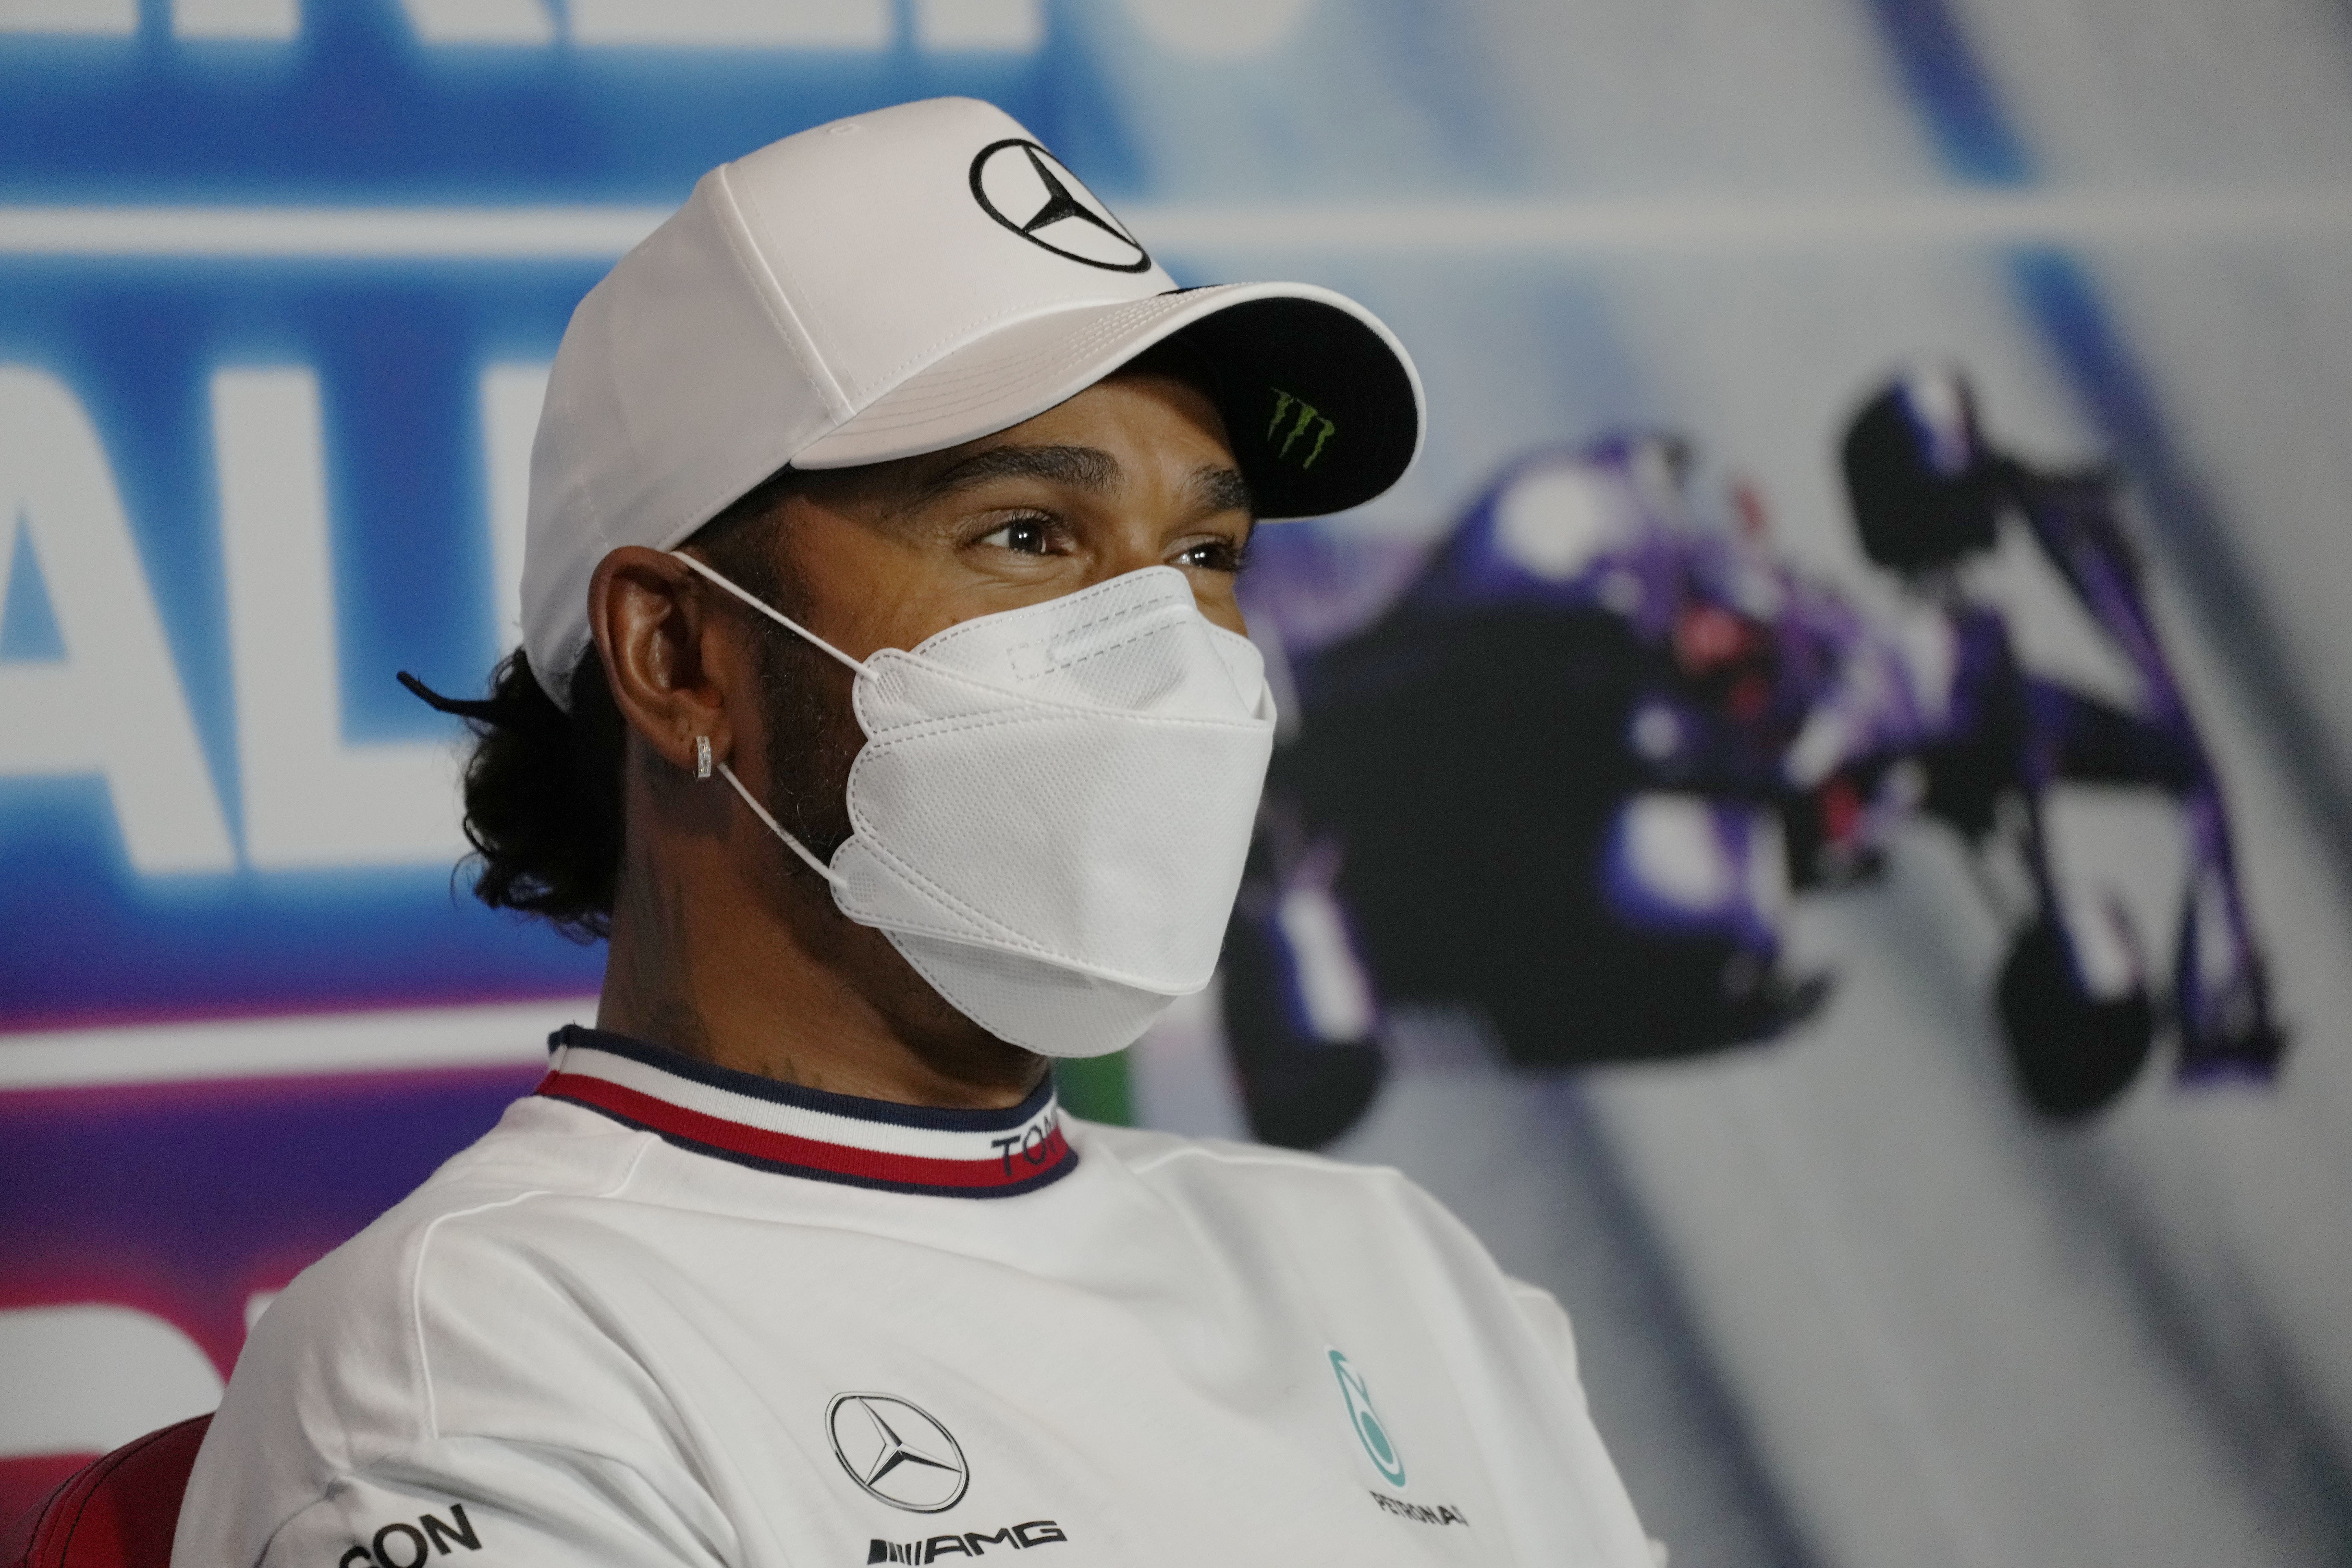 Lewis Hamilton “No puedo decir si Russell será más rápido que Bottas»